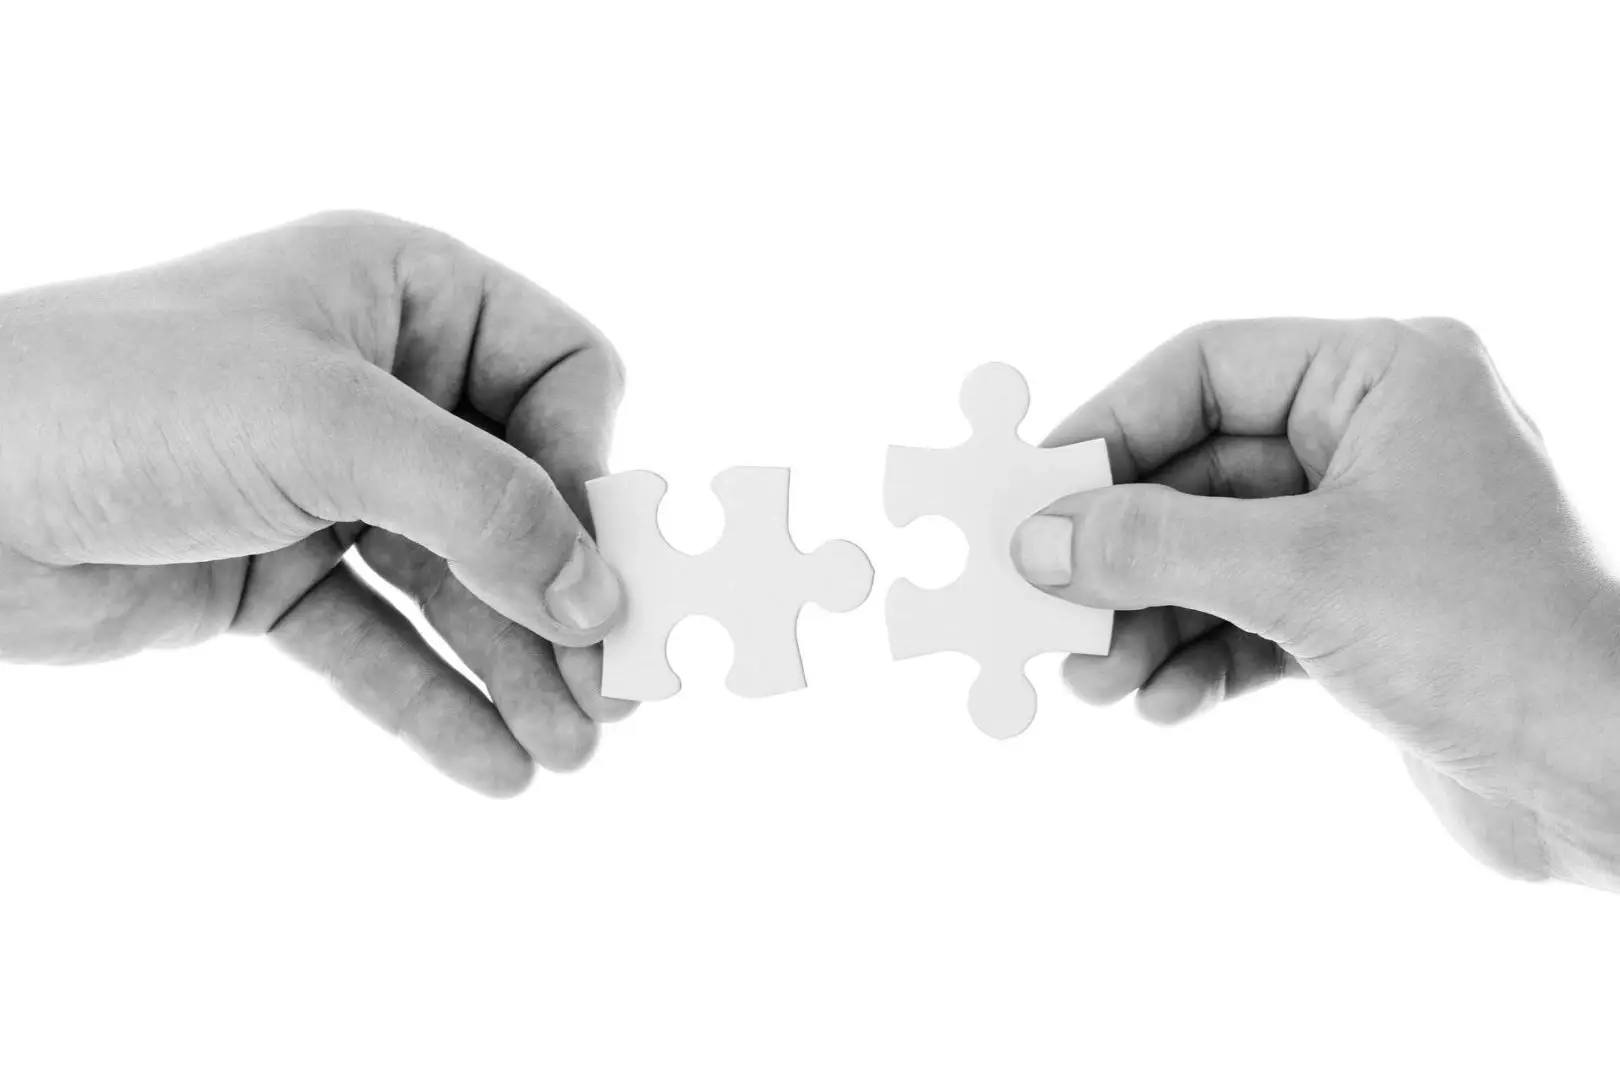 Zwei Hände fügen ein weißes Puzzlestück zusammen, symbolisch für die Lösungsfindung und Zusammenarbeit im Gesundheitscoaching in Hannover.